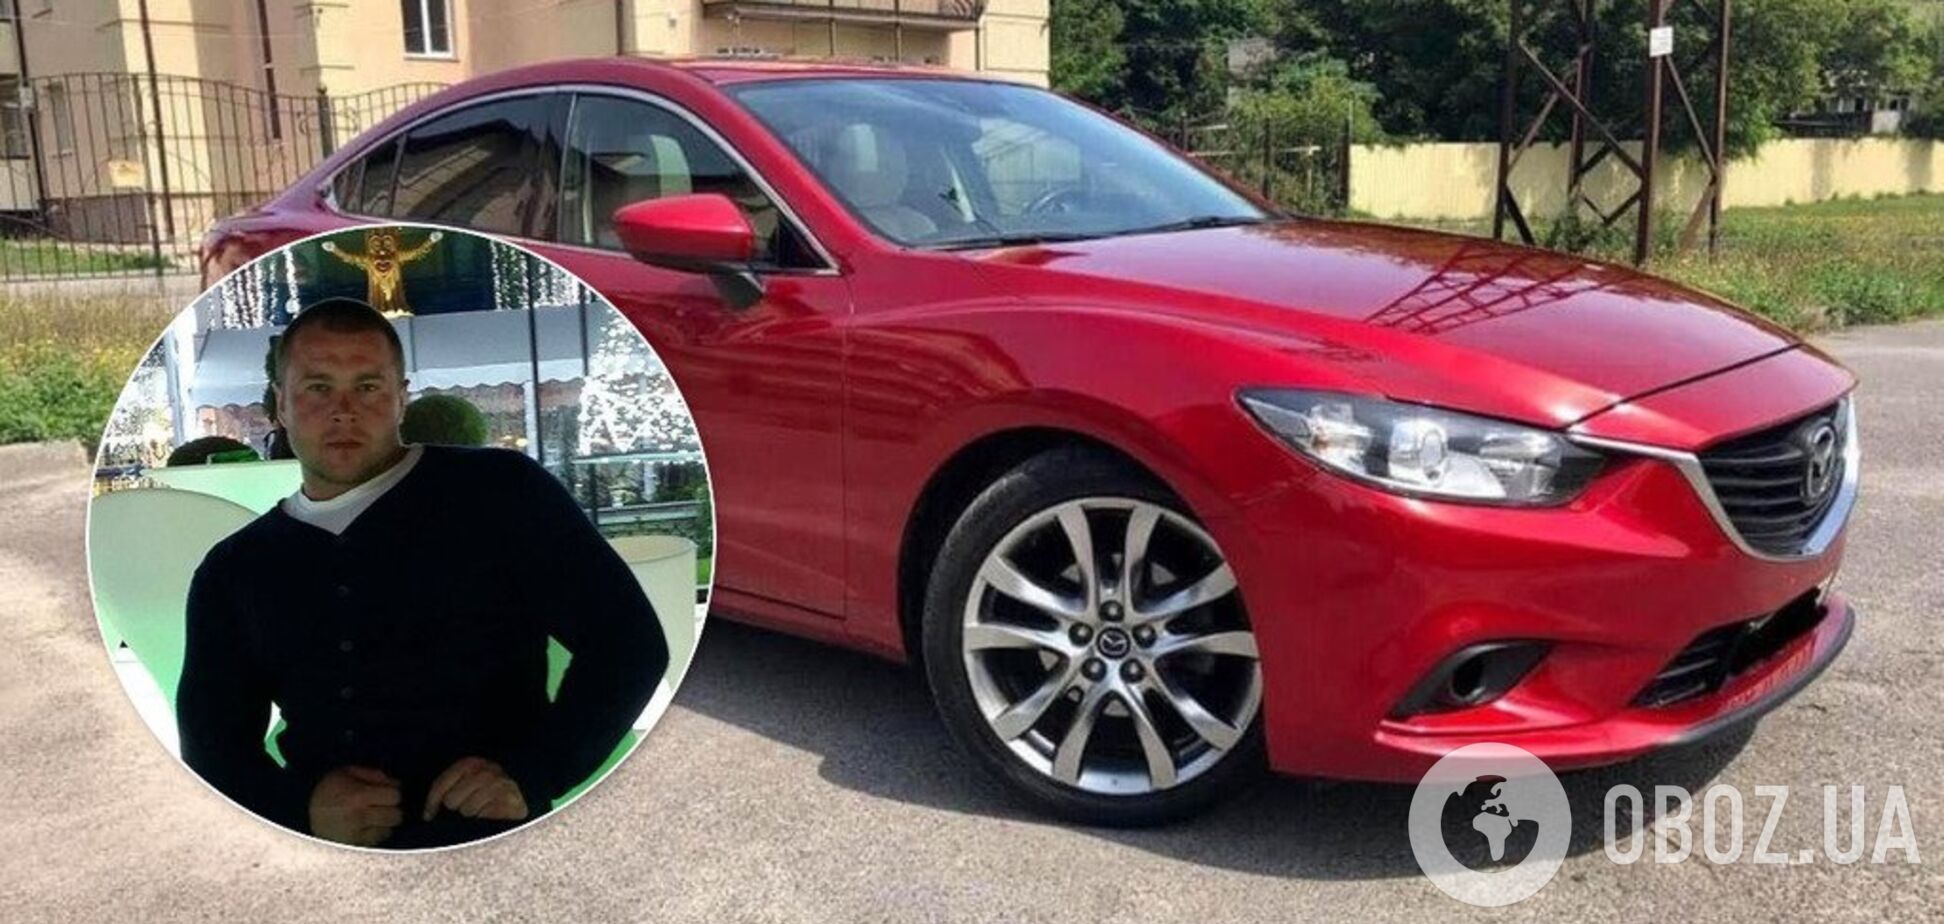 В Харькове наказали копов за езду на краденой Mazda